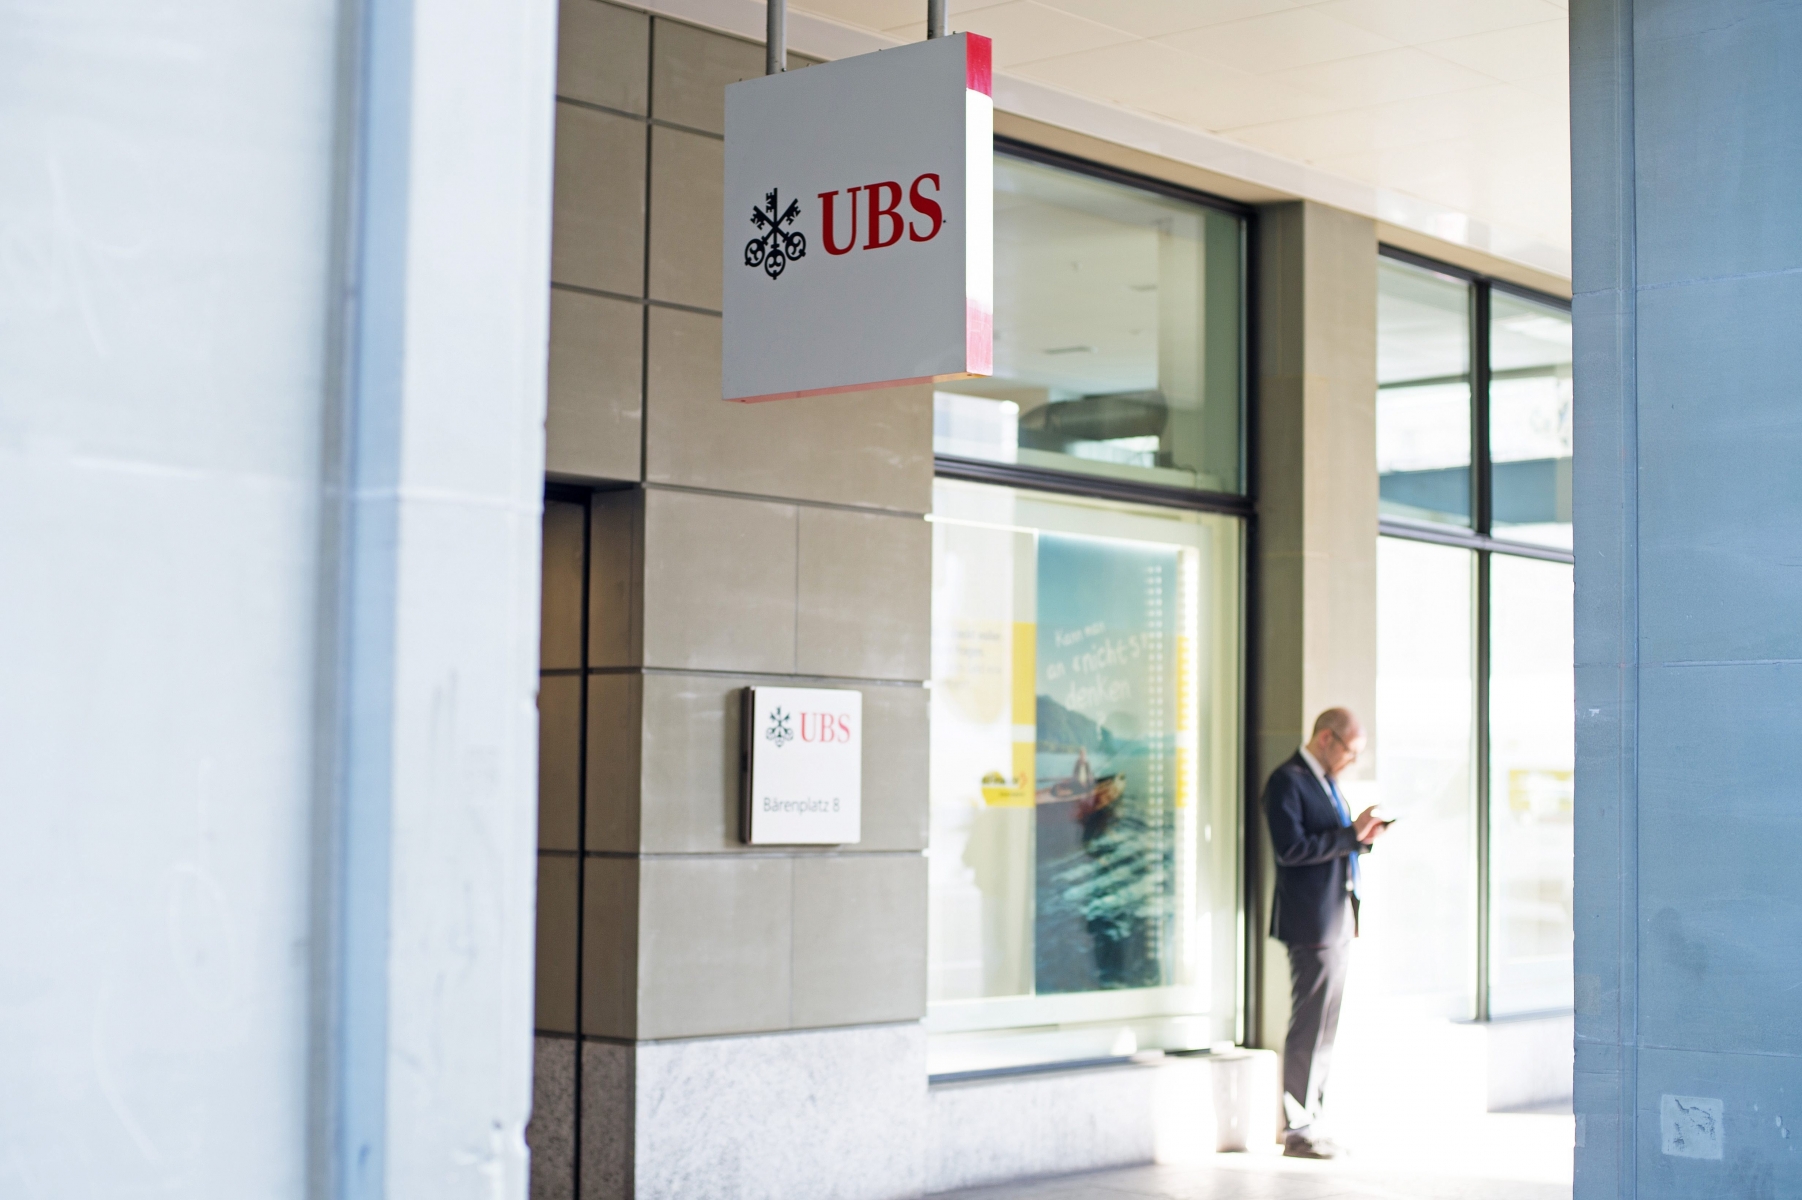 Succursale de l'UBS a Berne



Berne, le 12 fevrier 2015

Photo: David Marchon BERNE